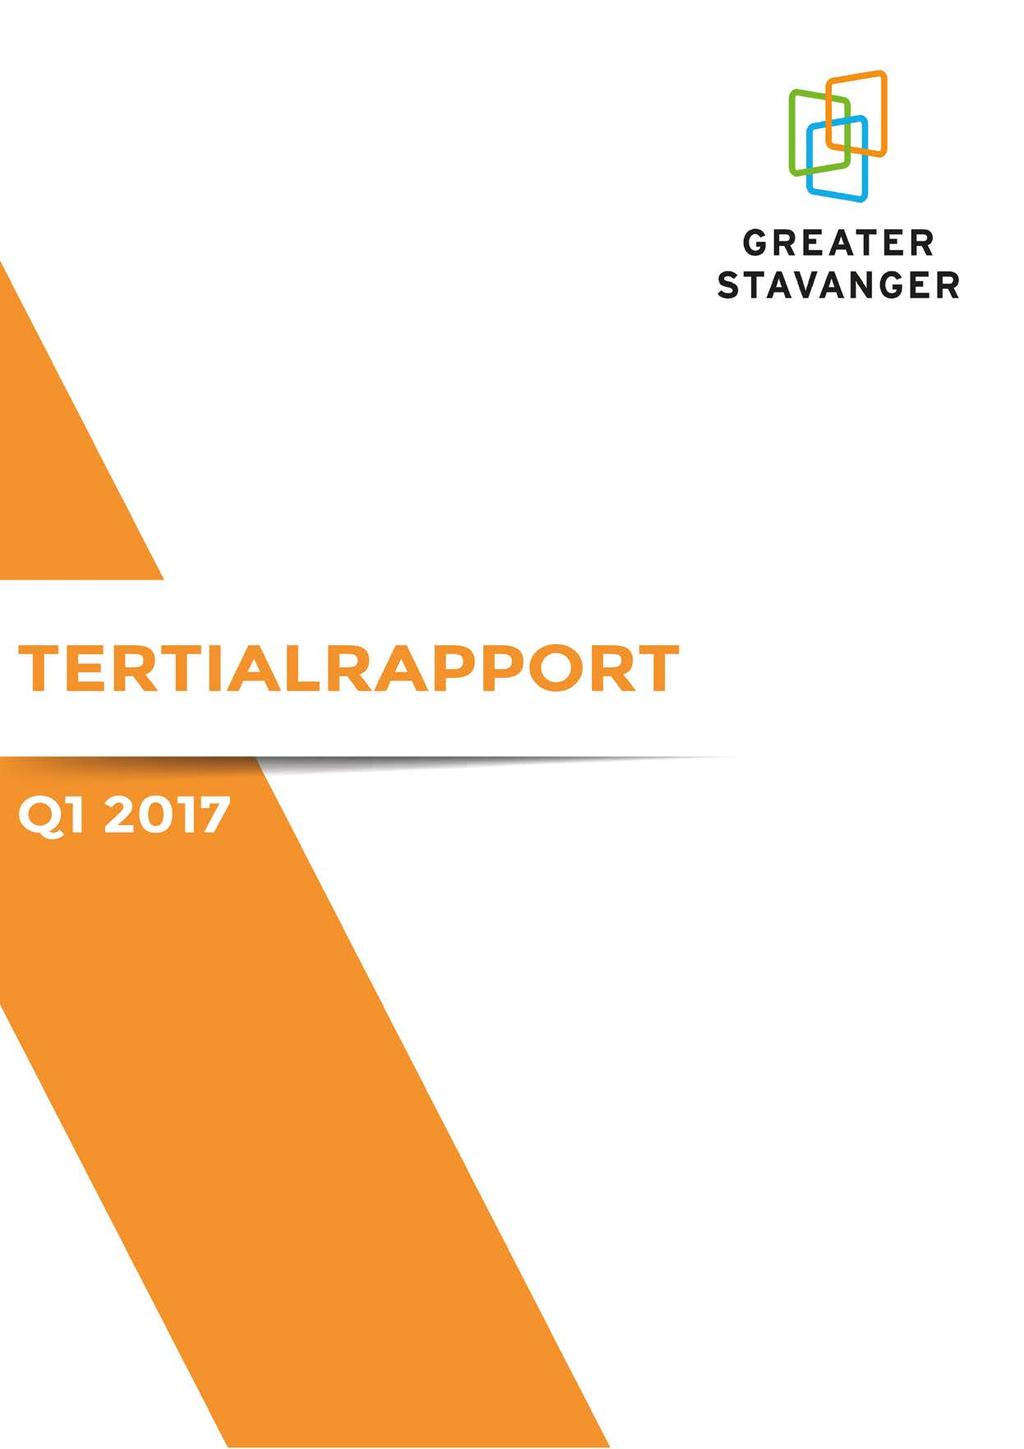 Q2 2017 Greater Stavanger